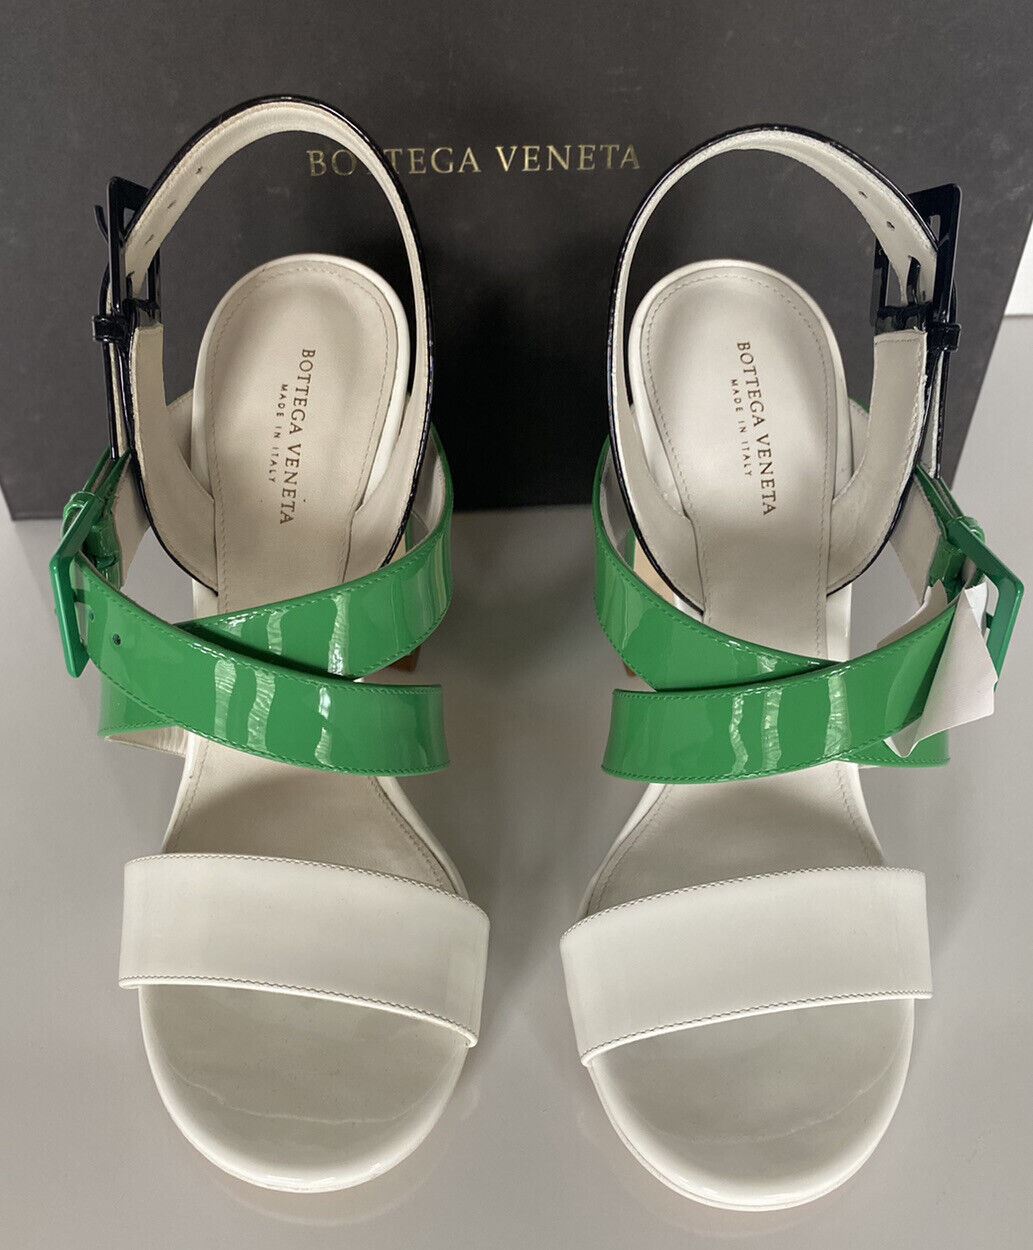 NIB $ 760 Bottega Veneta Riemchen-Sandalen mit Blockabsatz und dreifarbigem Lack 7,5 565654 